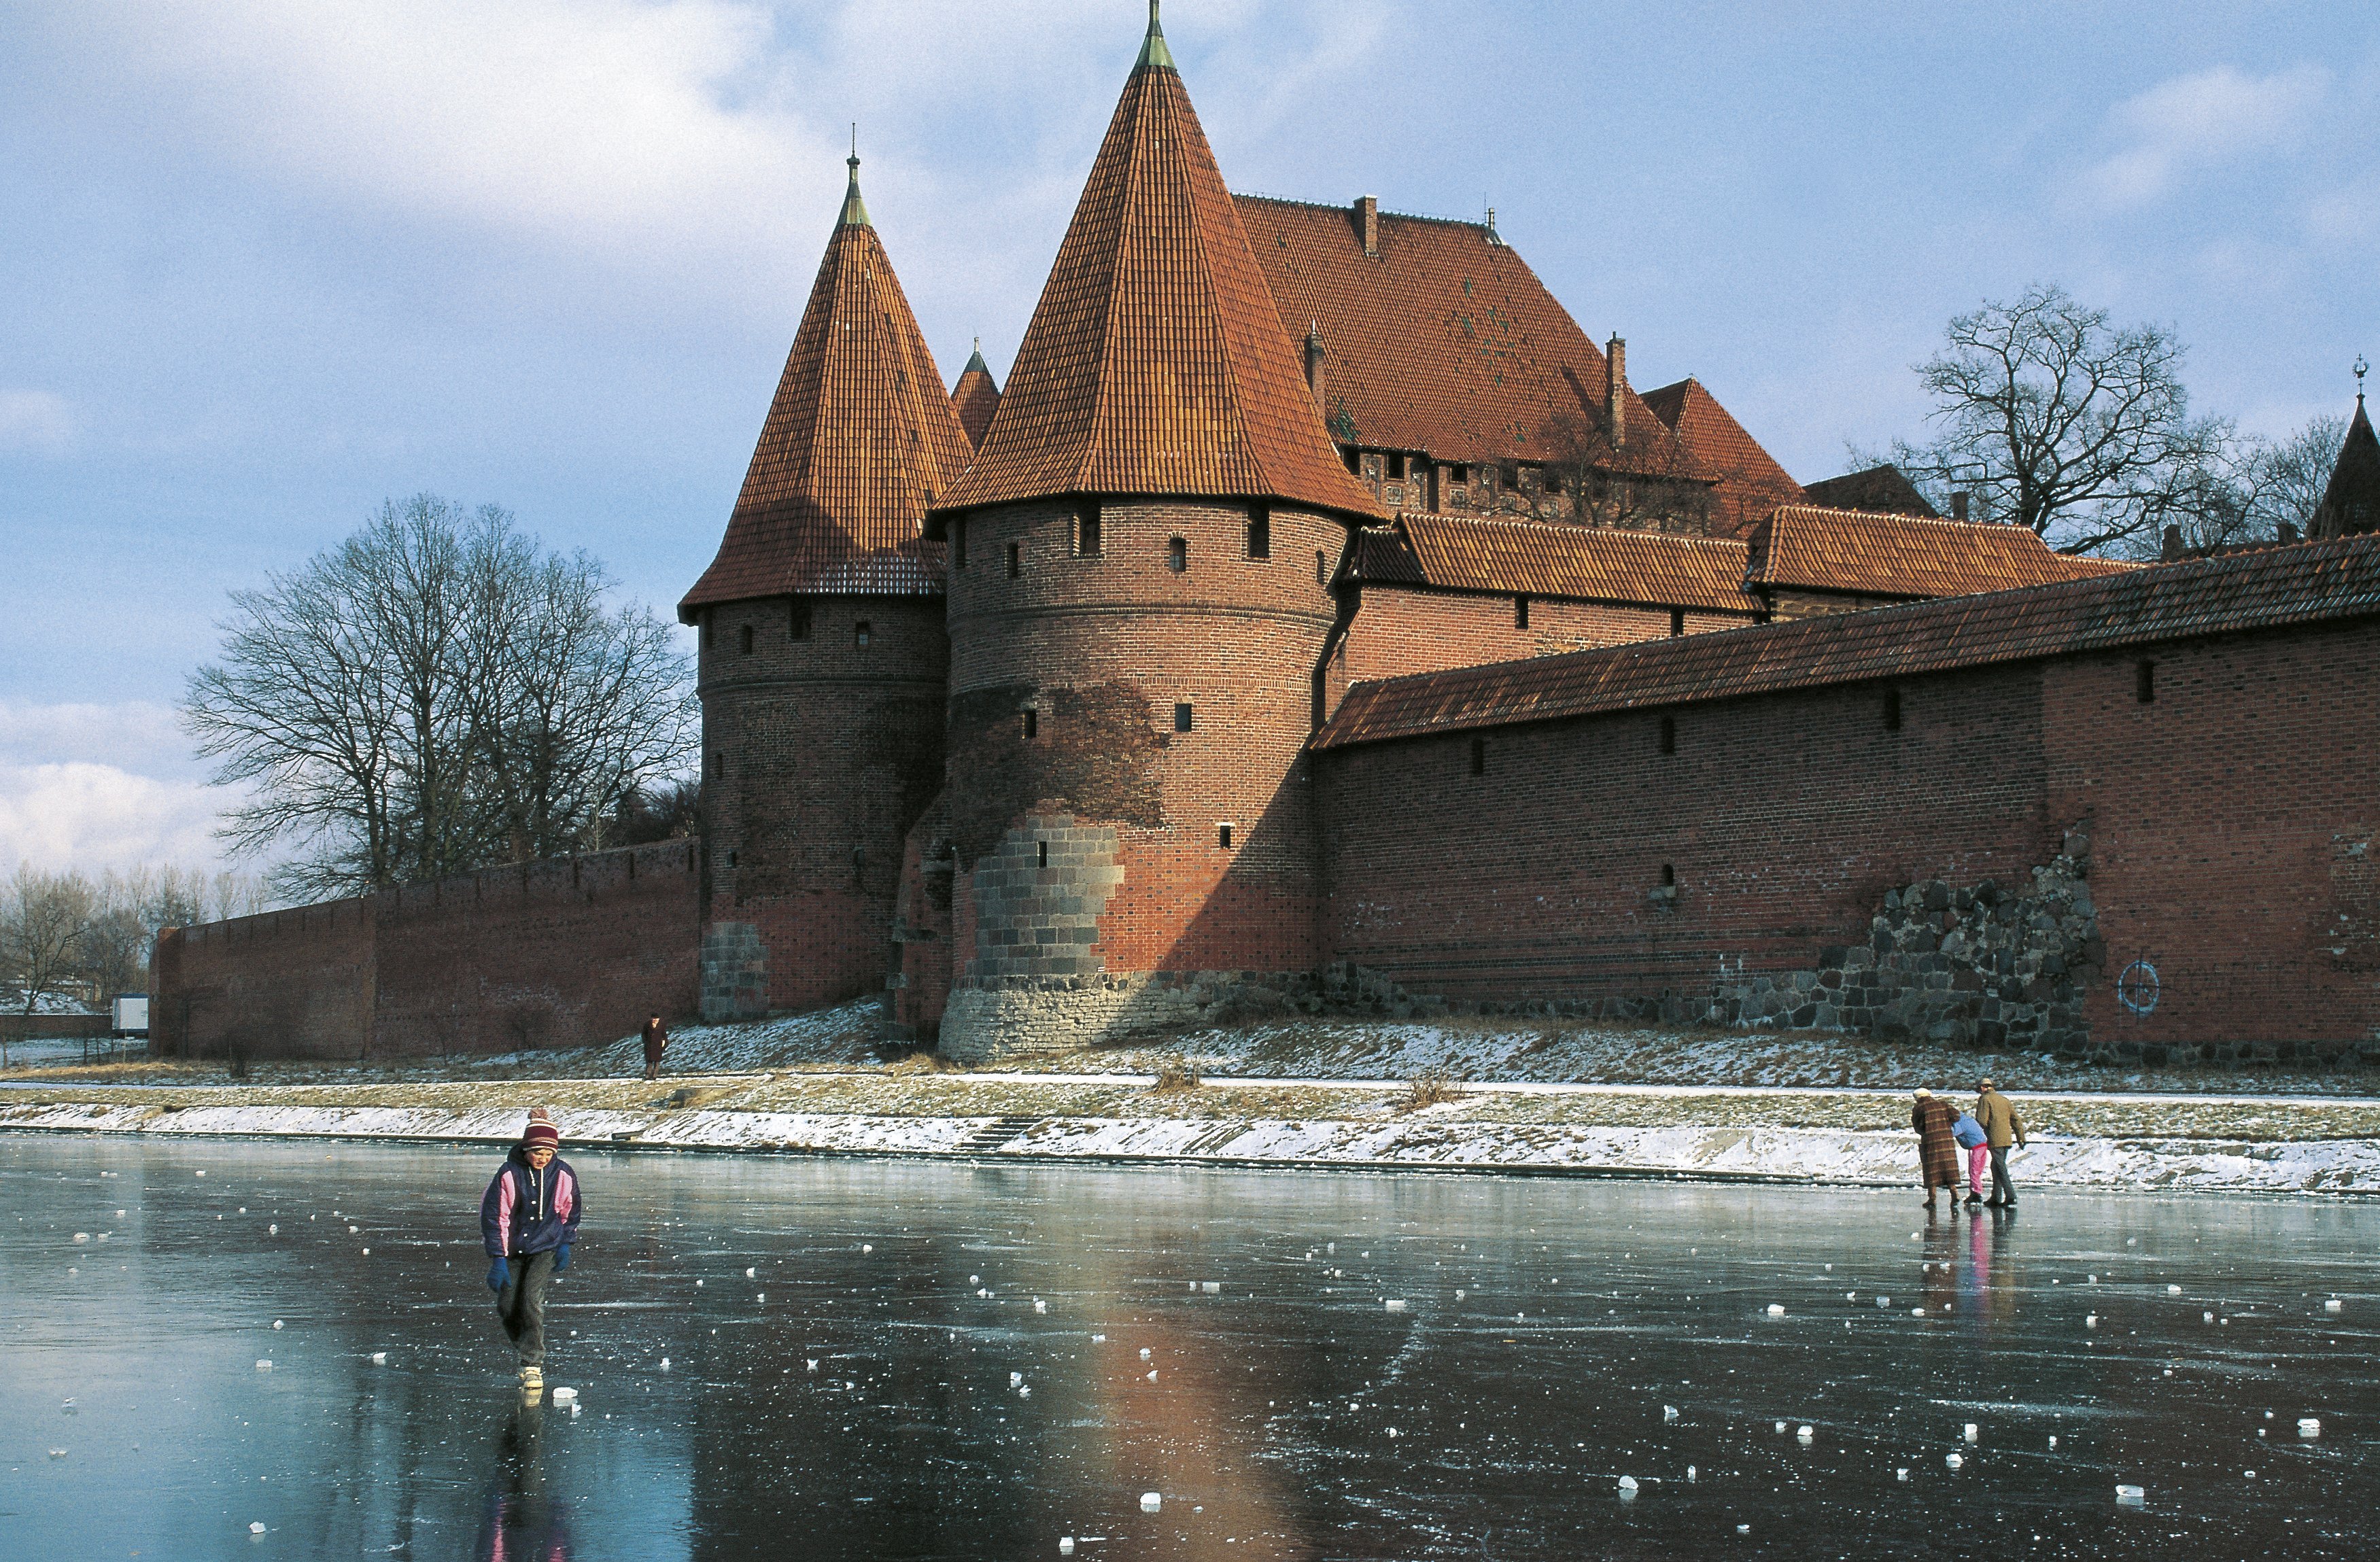 Auf dem zugefrorenen Fluss neben der Burg laufen Menschen Schlittschuh